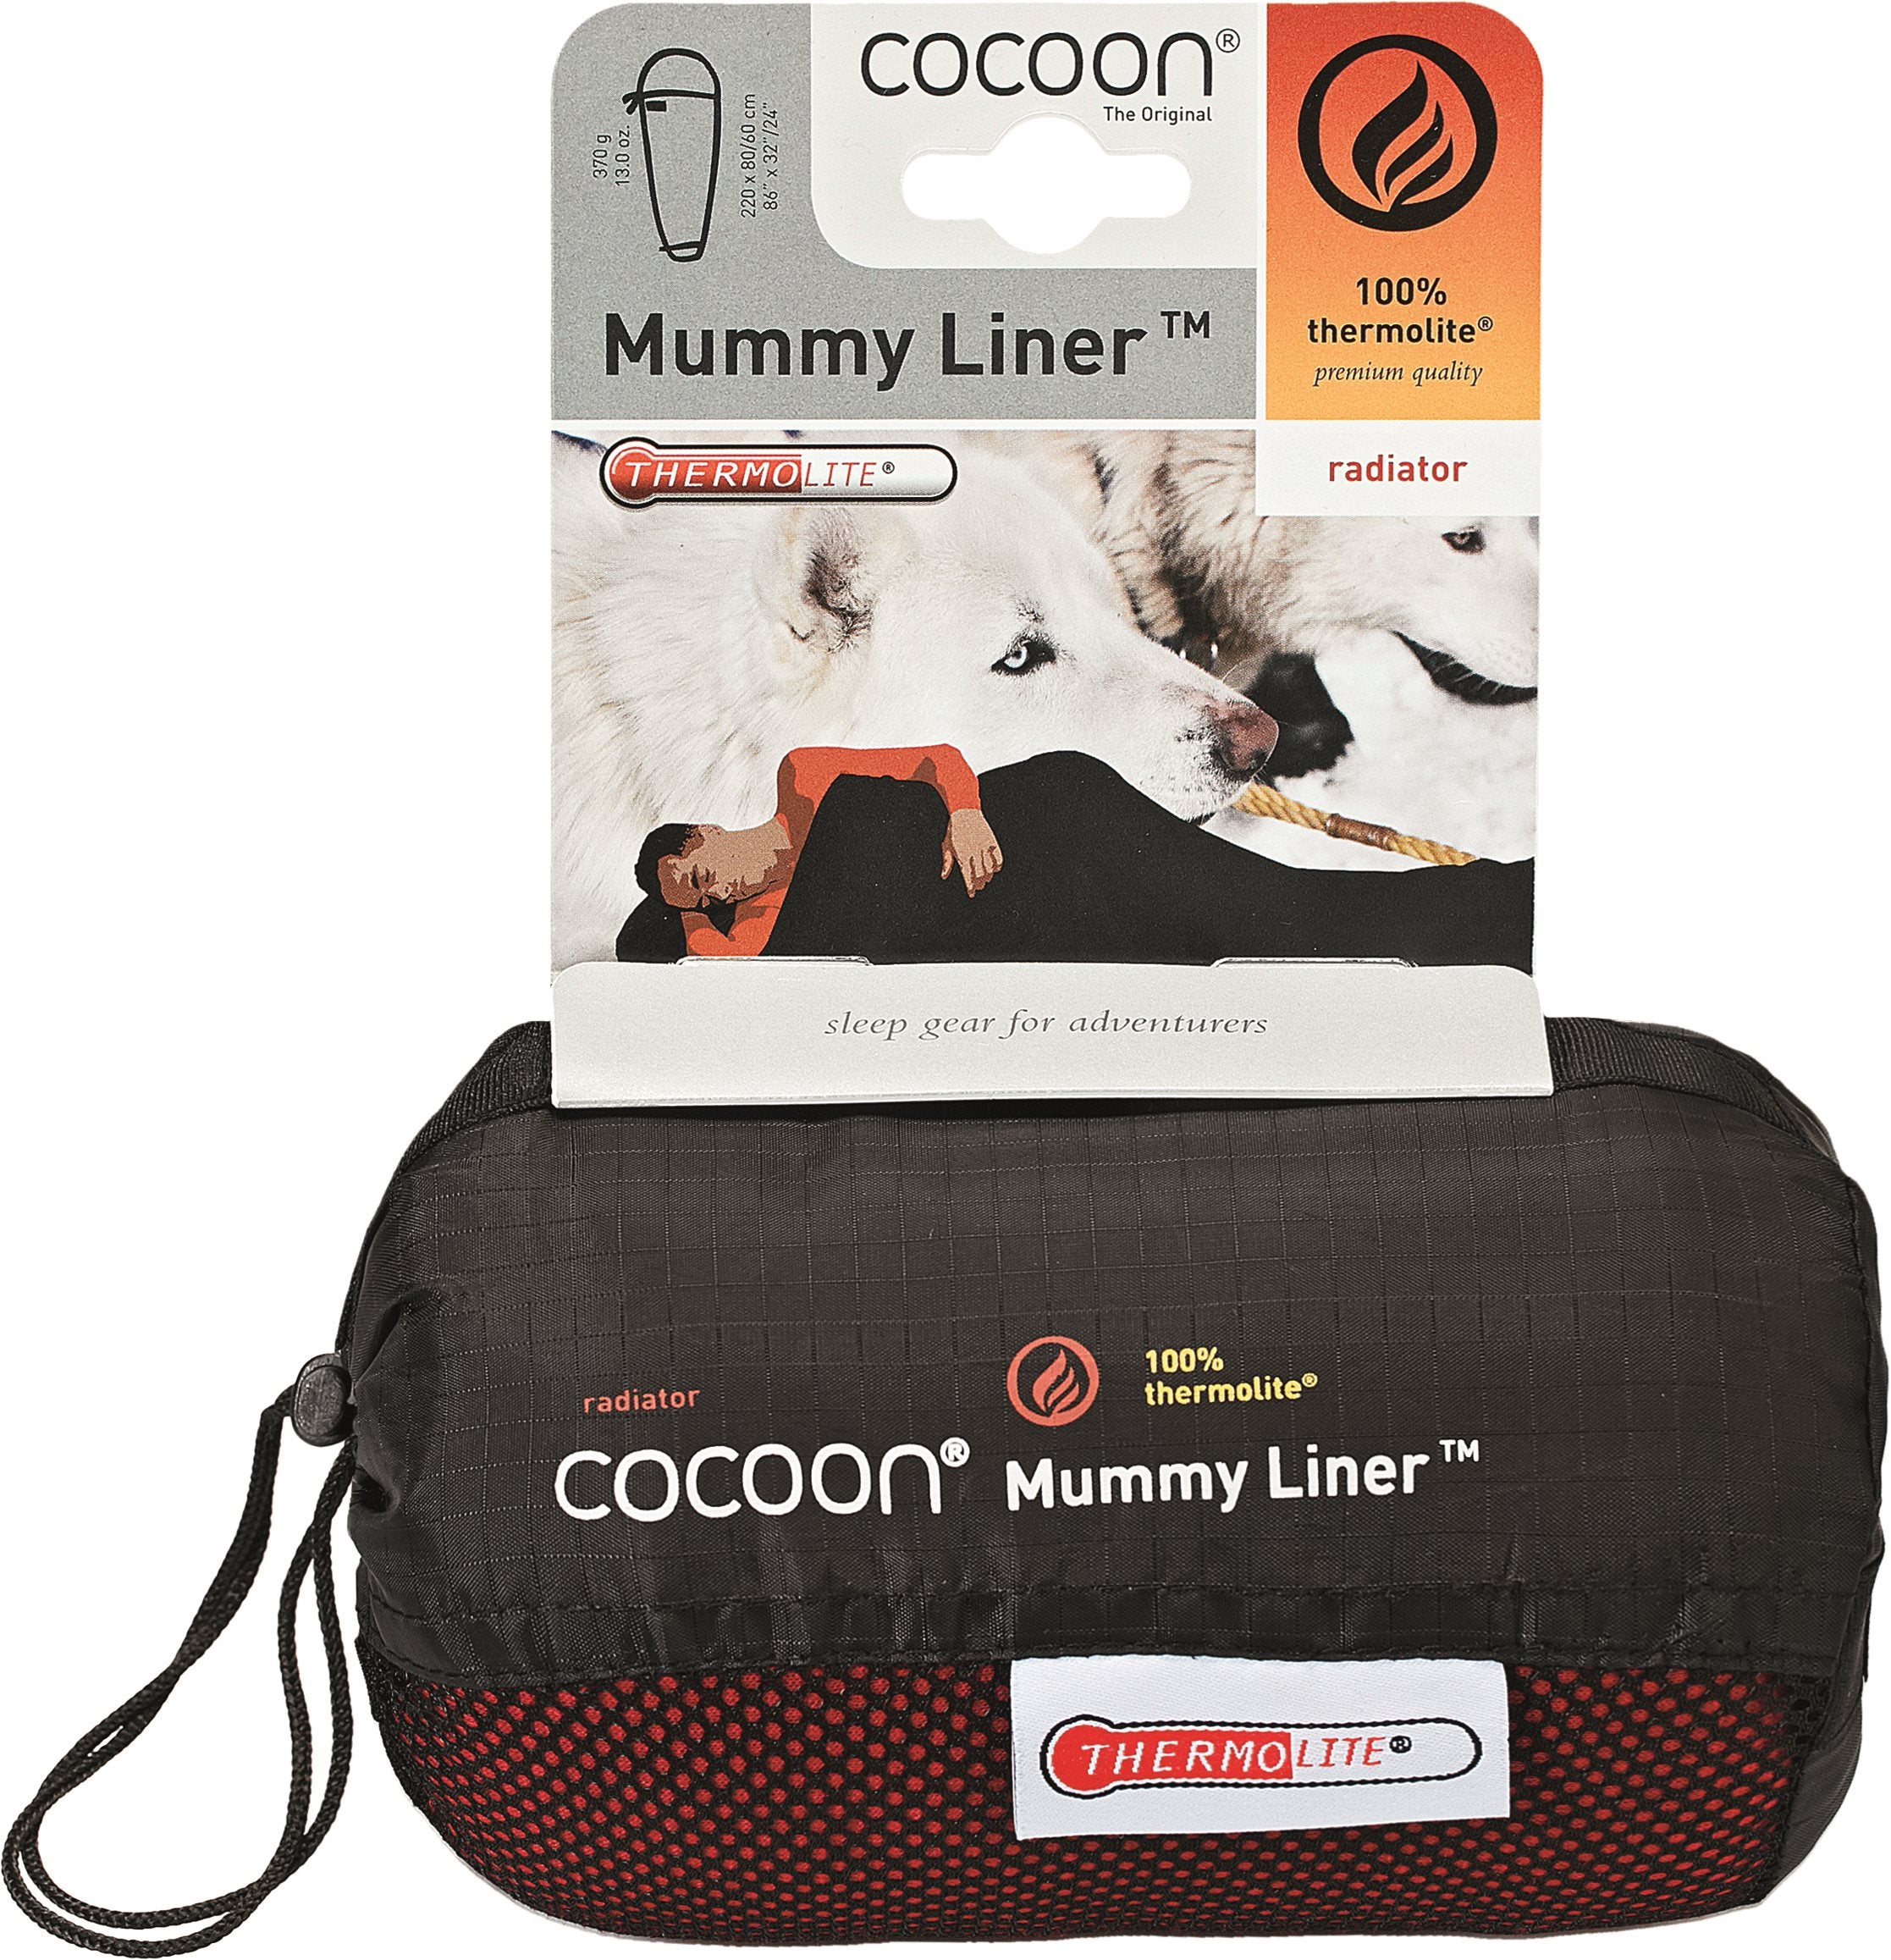 Cocoon Mummyliner Thermolite Radiator - Lava Lakenzak - Reisartikelen-nl